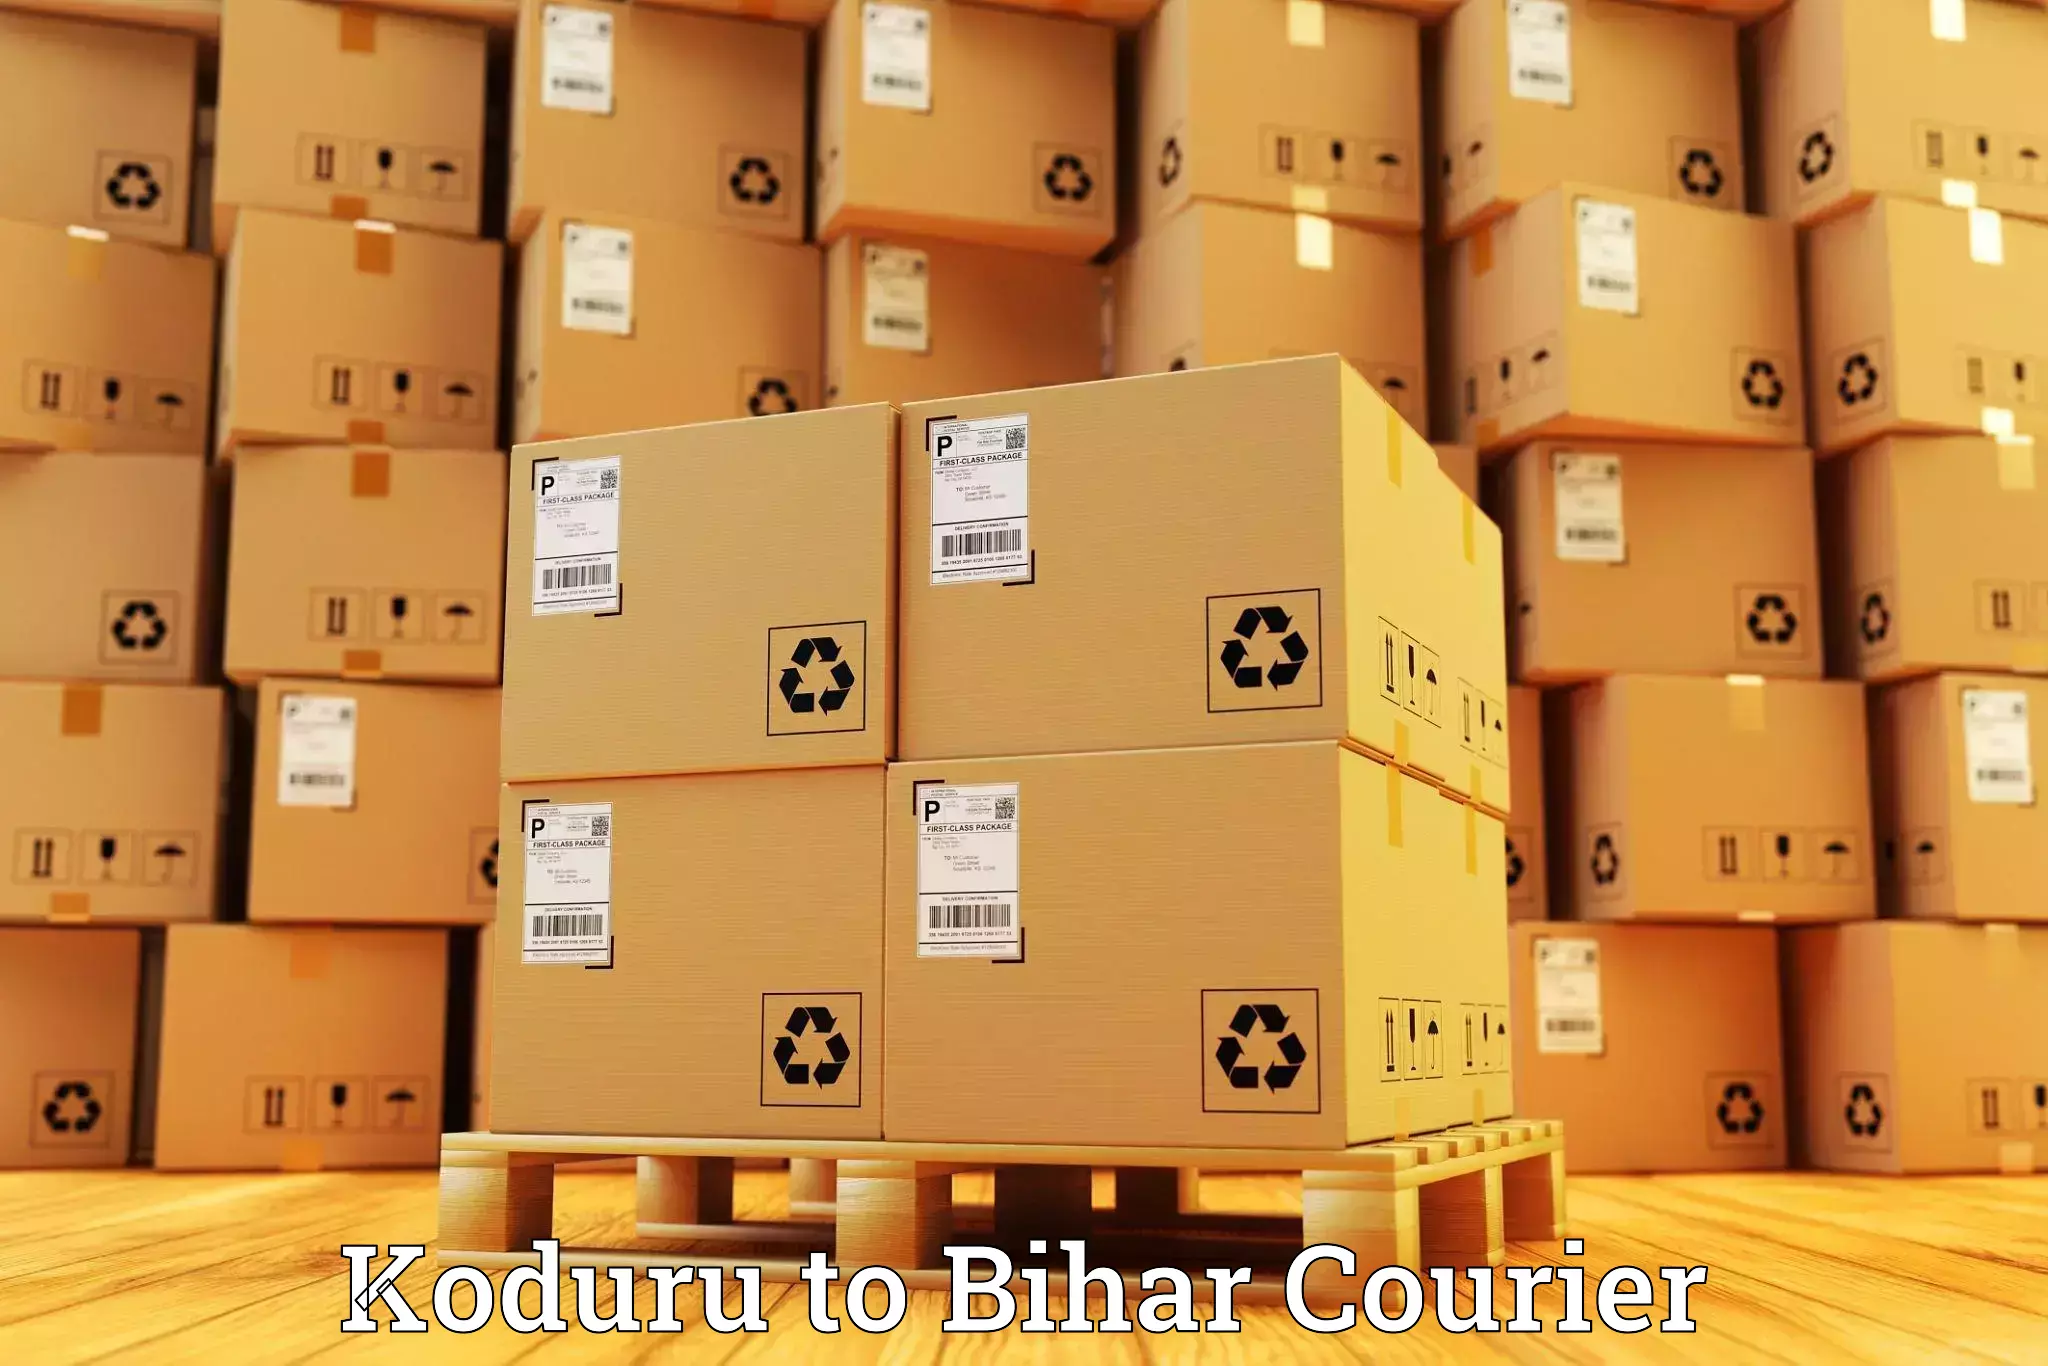 Urban courier service Koduru to Dehri